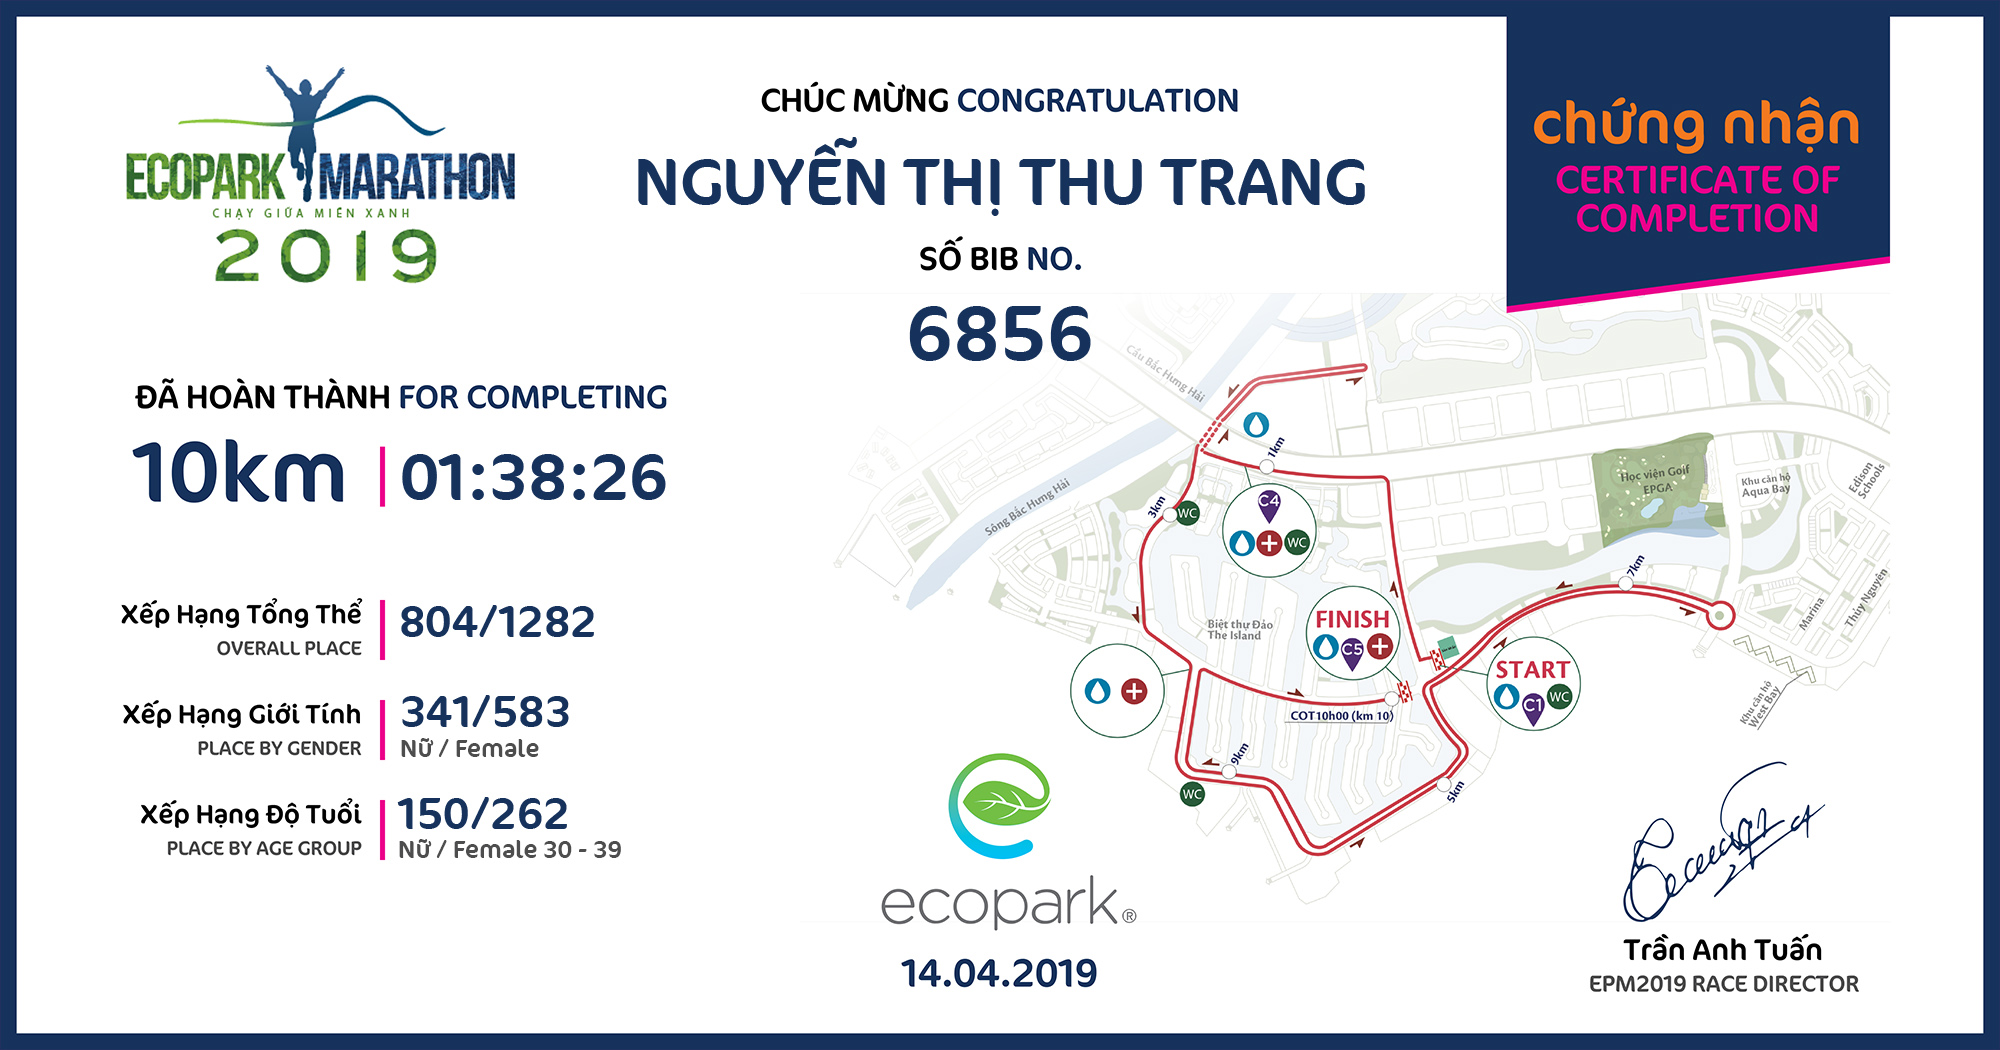 6856 - Nguyễn Thị Thu Trang